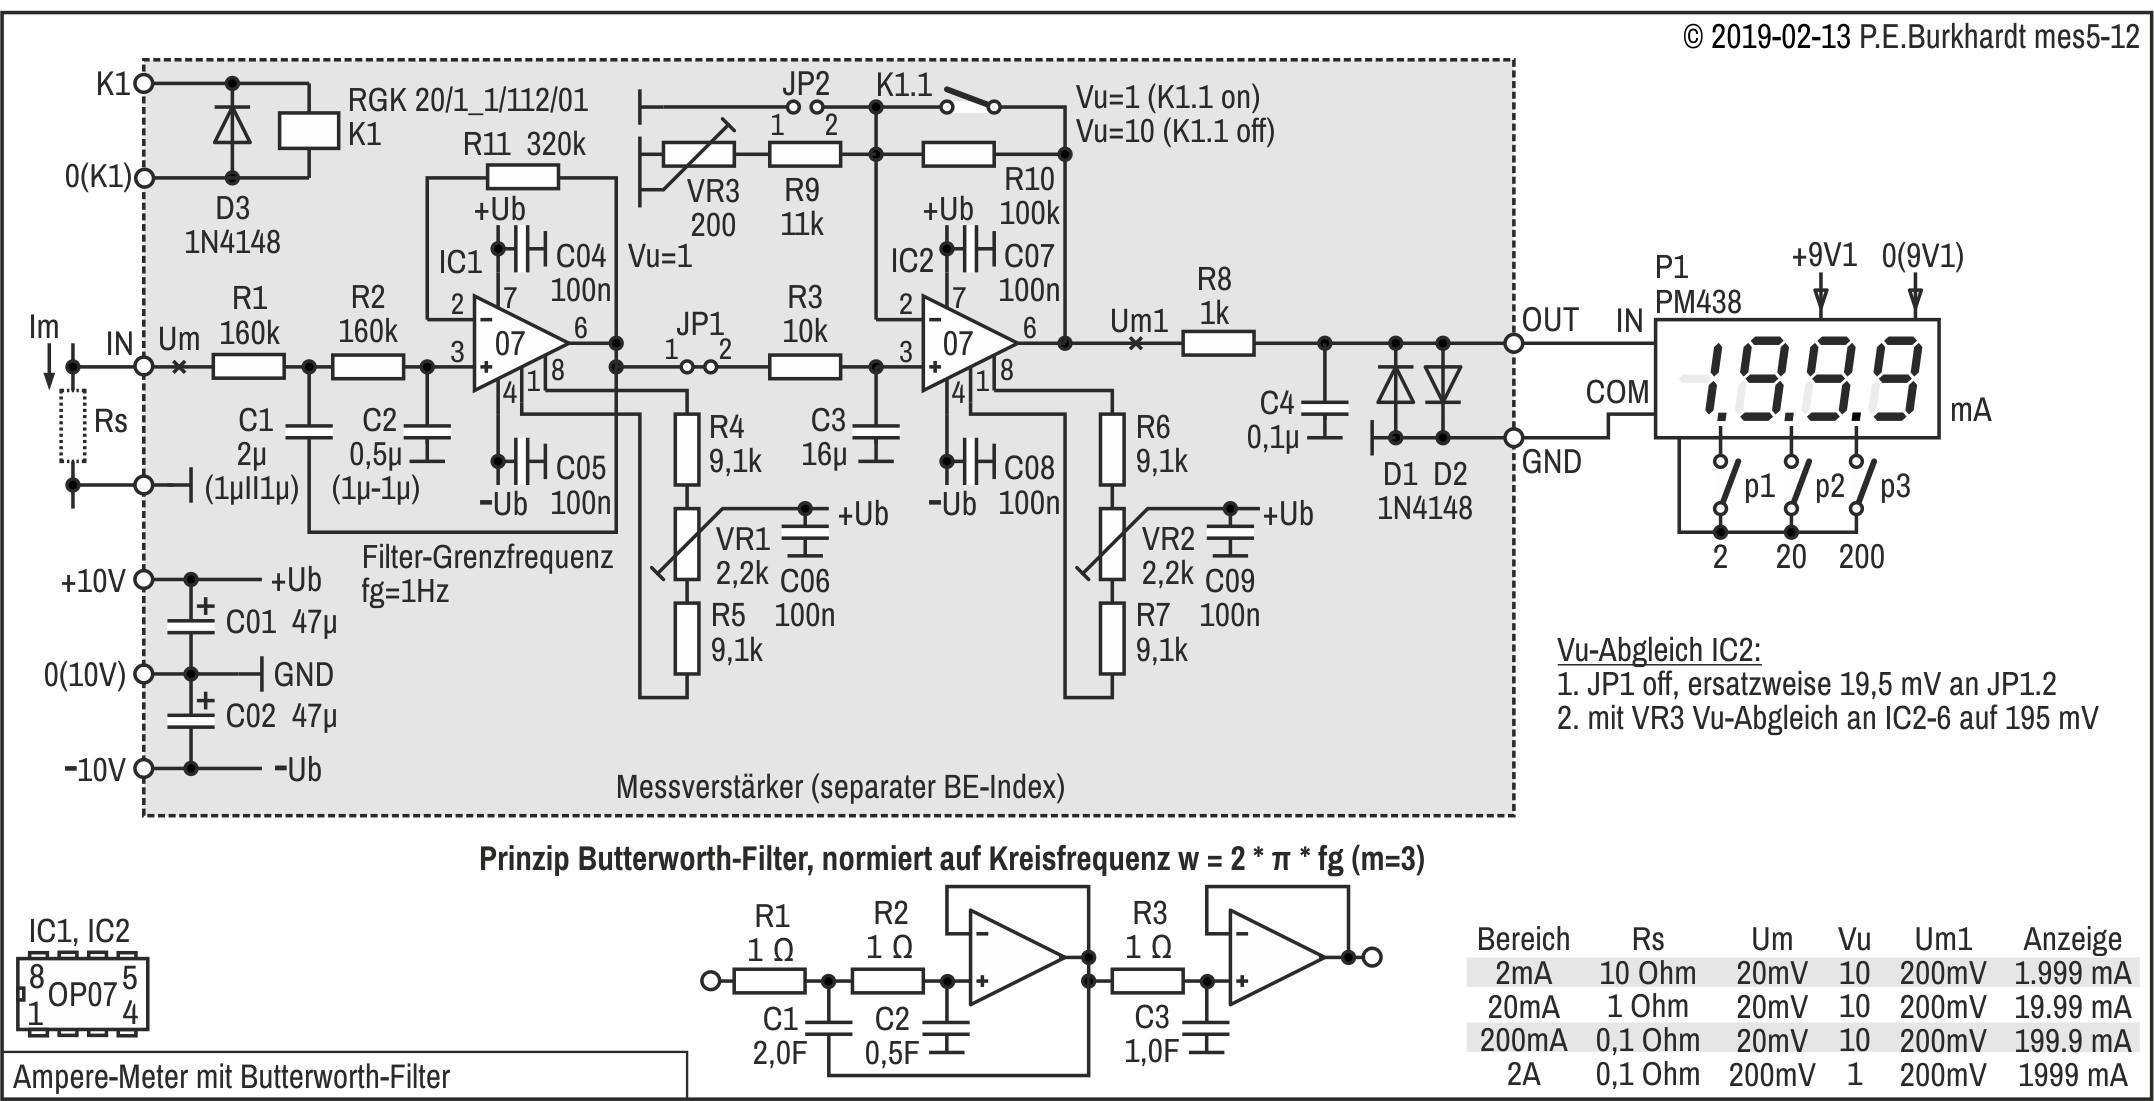 Milliampere-Meter DC/AC mit Butterworth-Filter